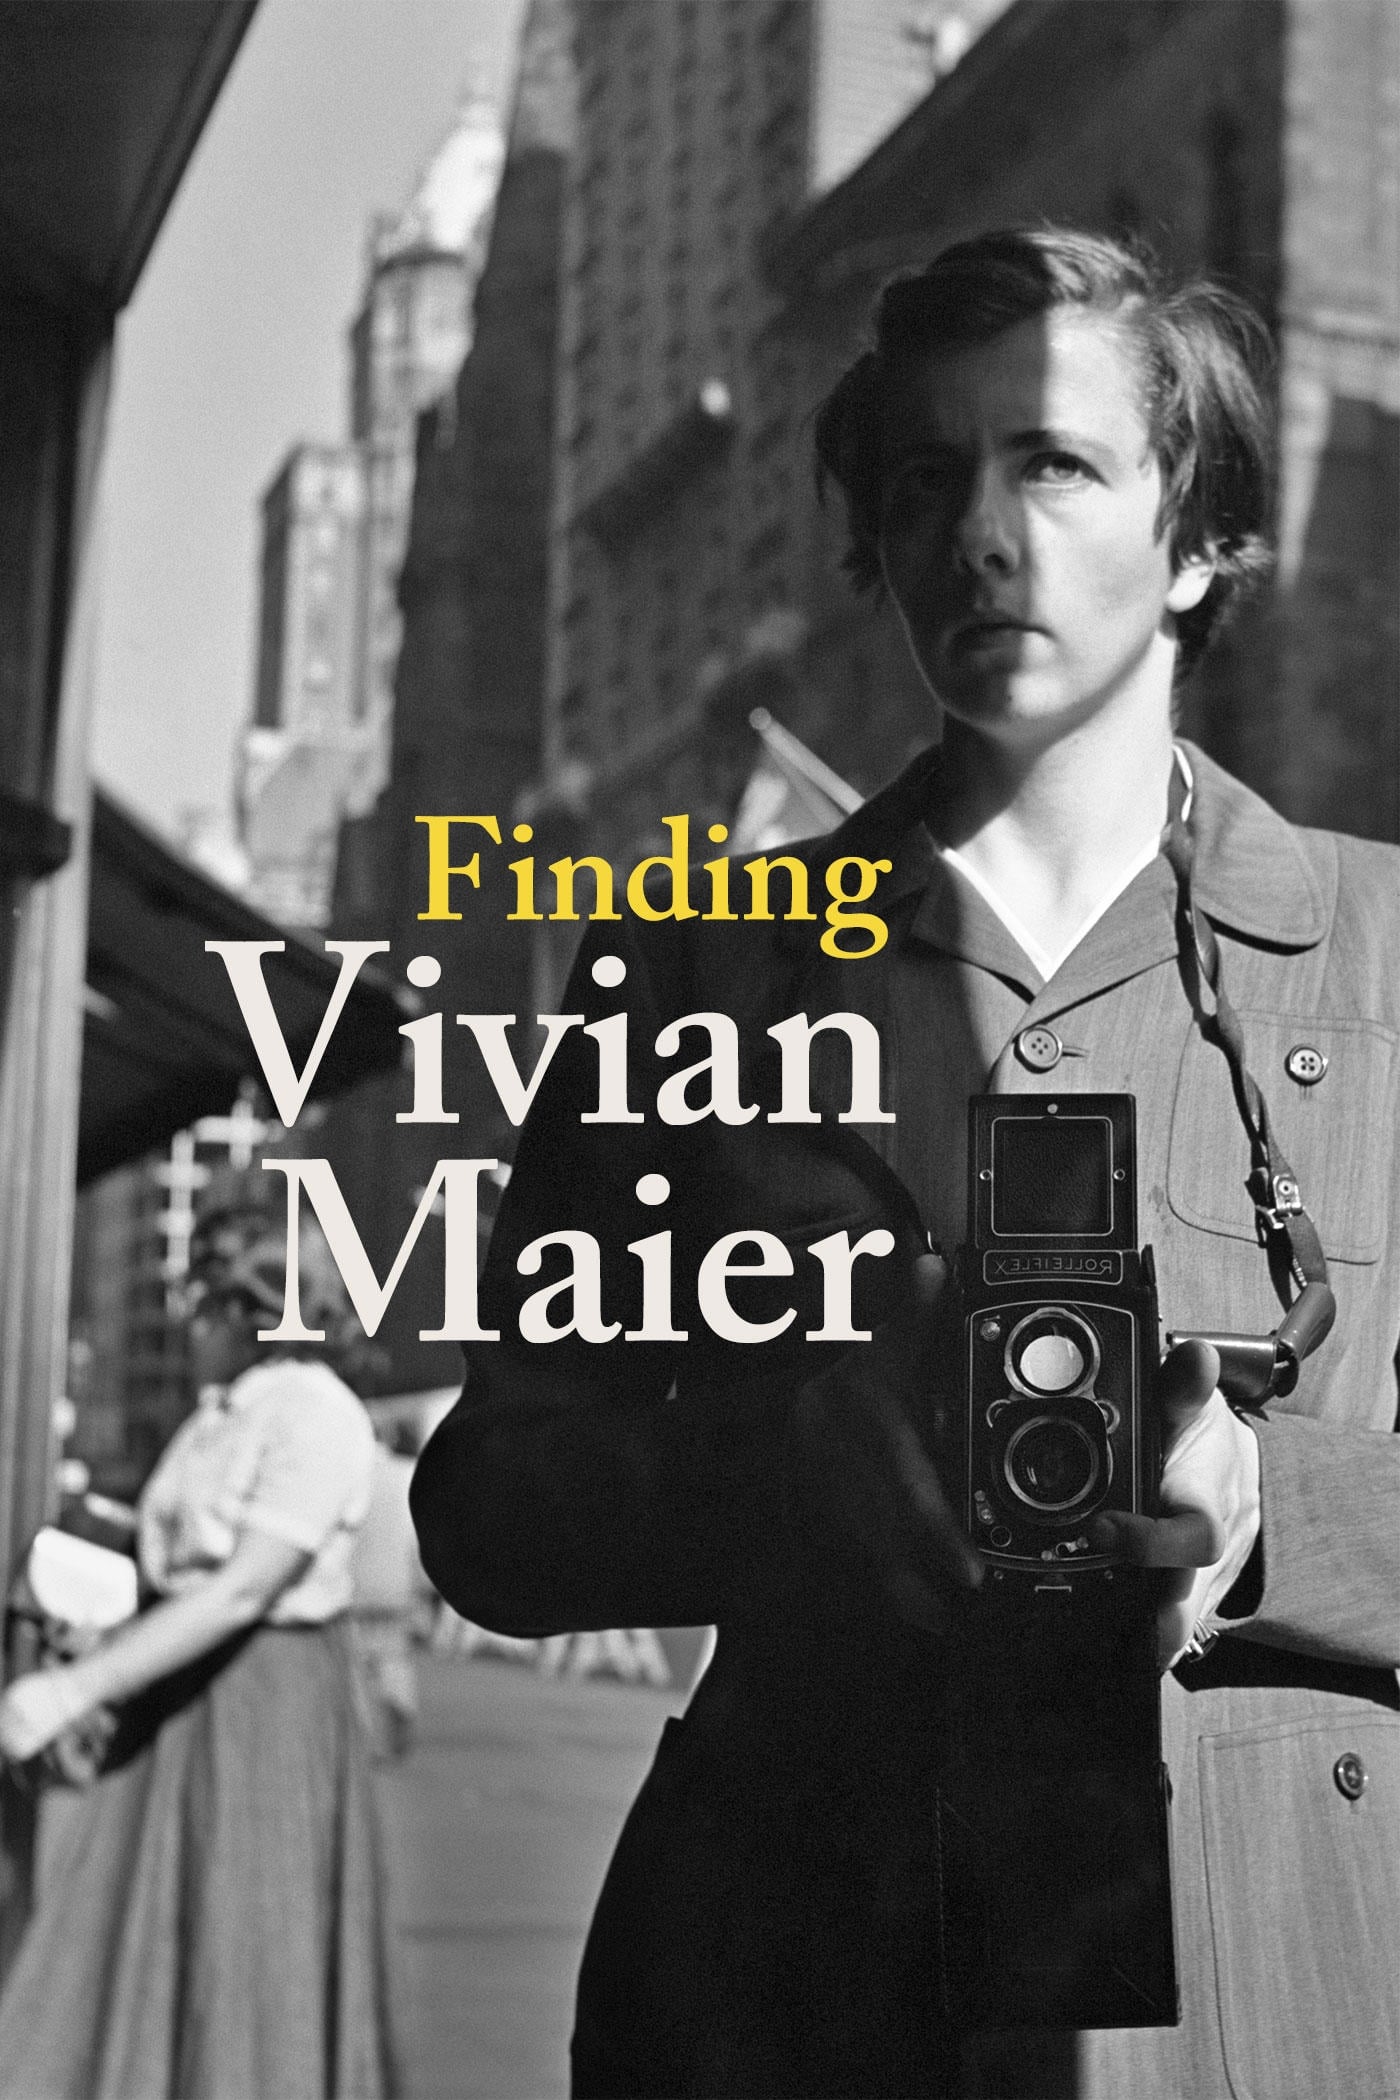 Finding Vivian Maier (2014)